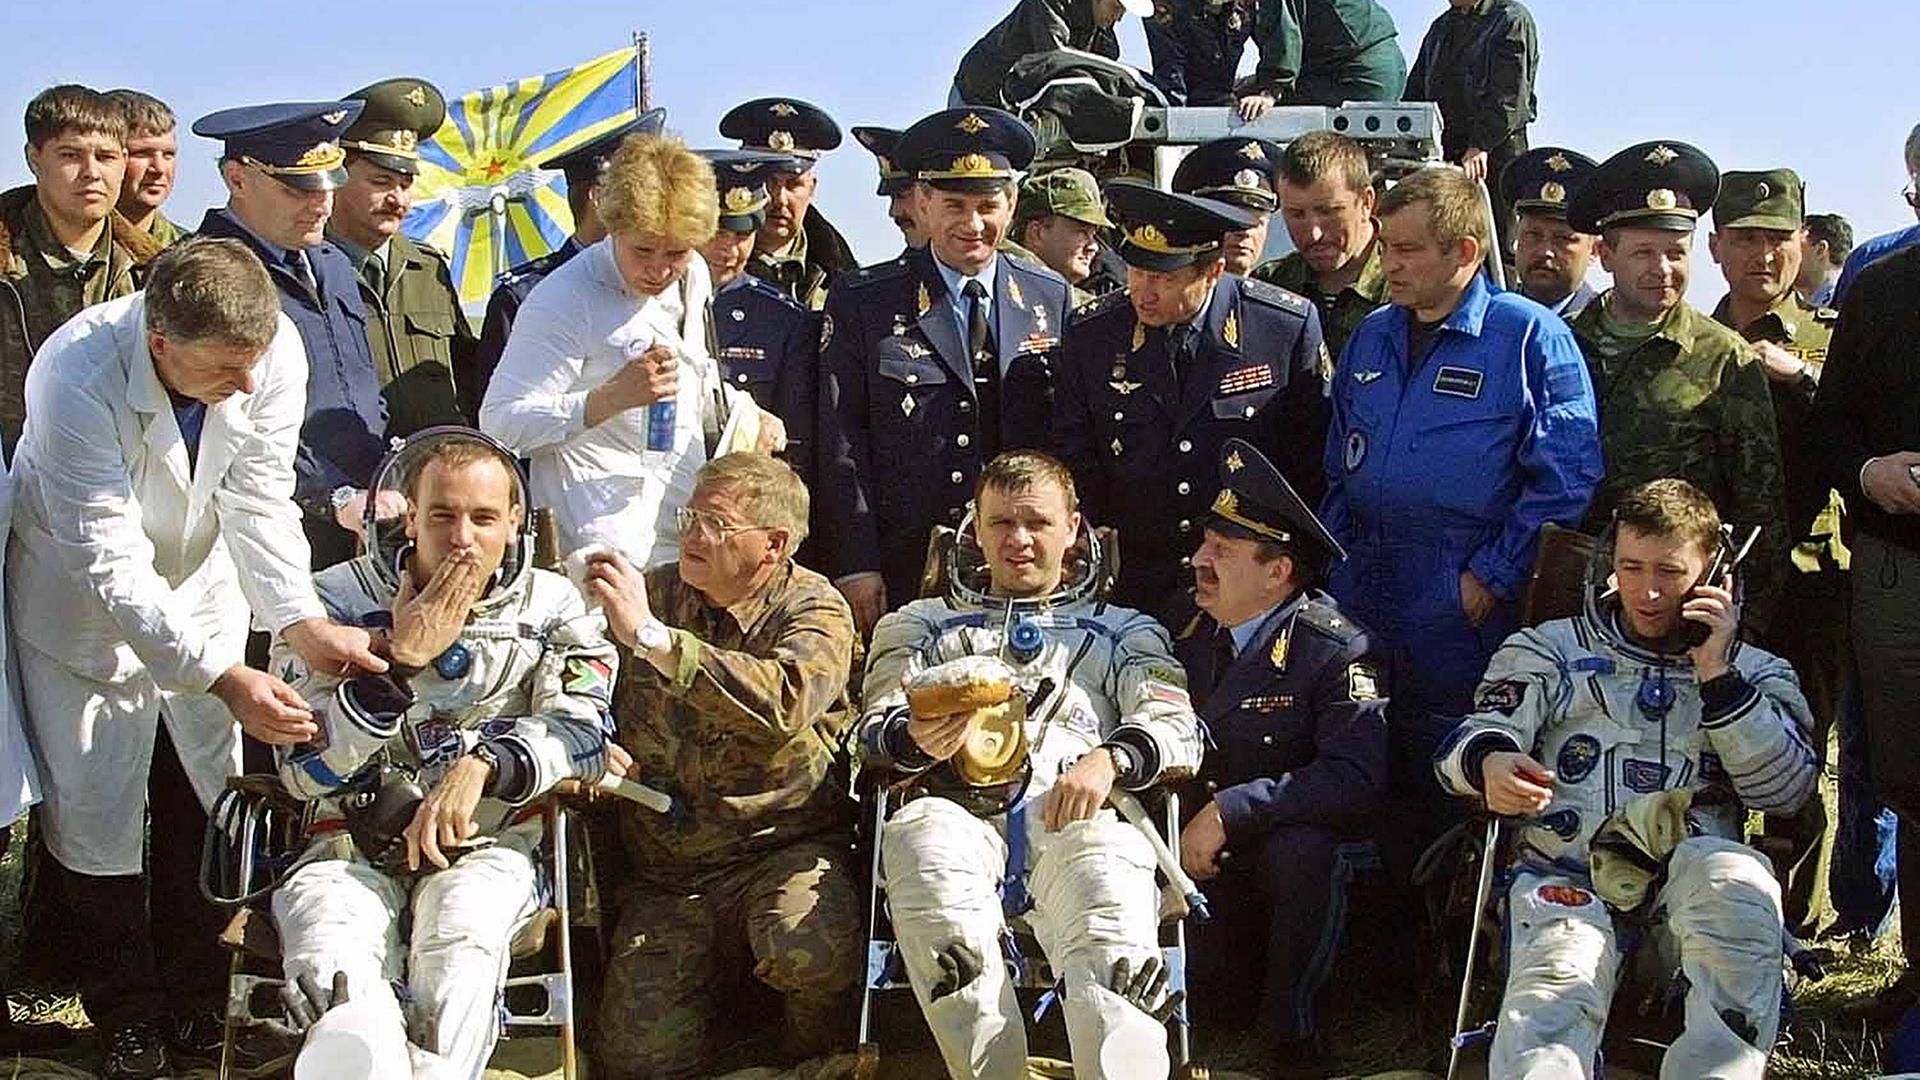 Archiv: Mark Shuttleworth (l) und die Besatzung eines russischen Raumschiffes nach der Landung. Aufgenommen am 02.05.2002